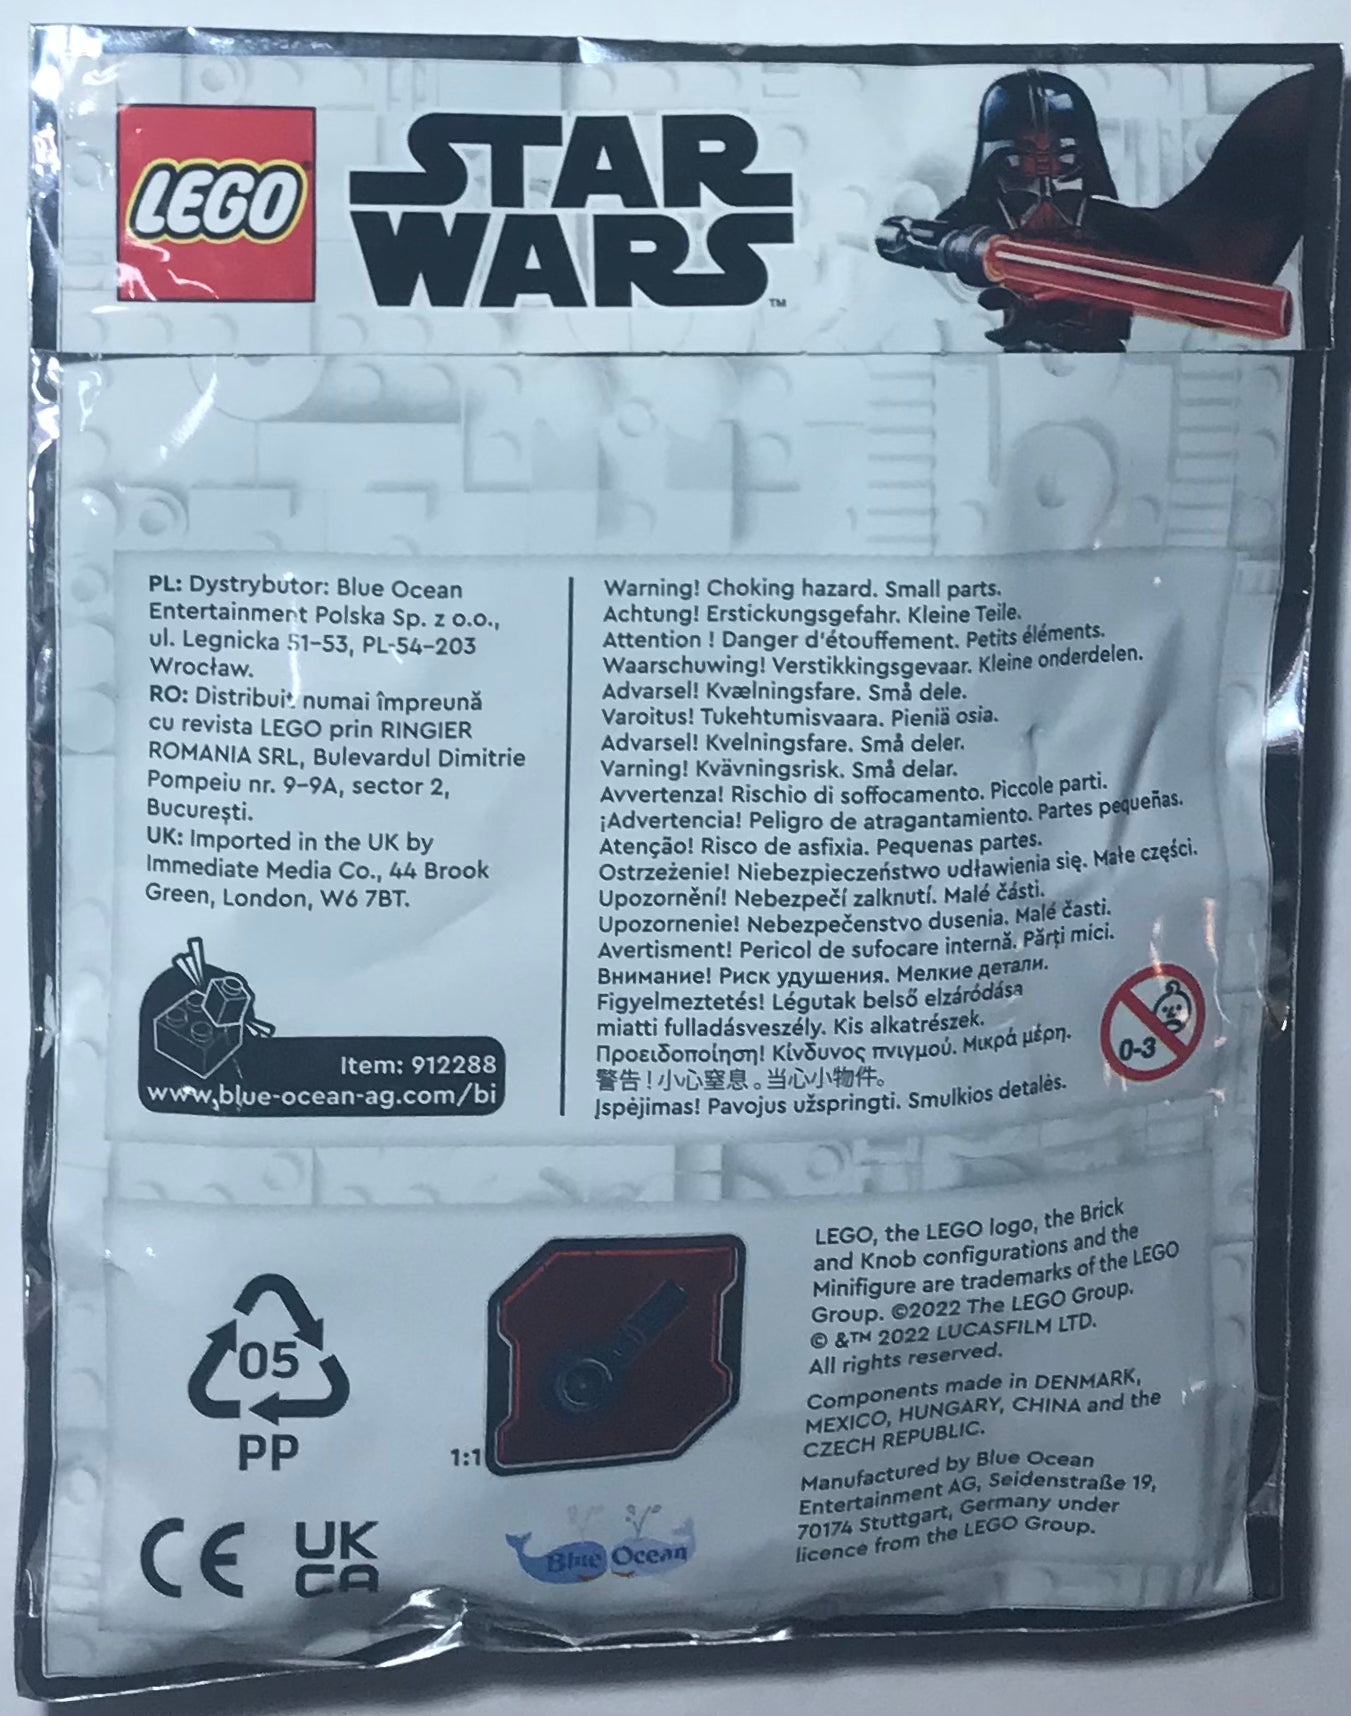 LEGO Star Wars Limited Edition TIE Whisper Foil Pack Bag Set 912288